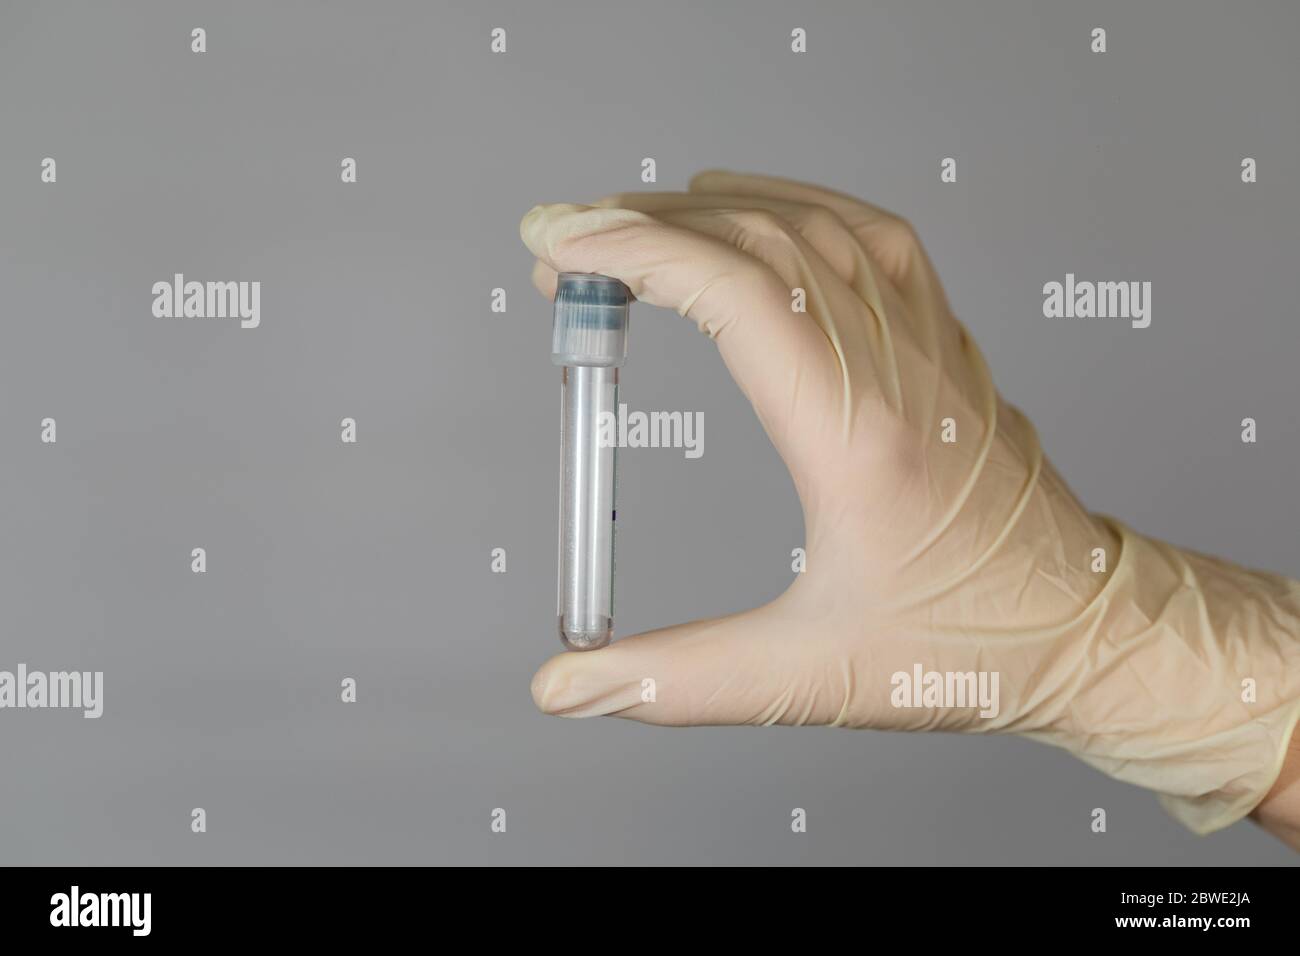 Provetta vuota per l'analisi biomateriale nelle mani di un infermiere. Analisi clinica del virus con misure precauzionali. Foto Stock